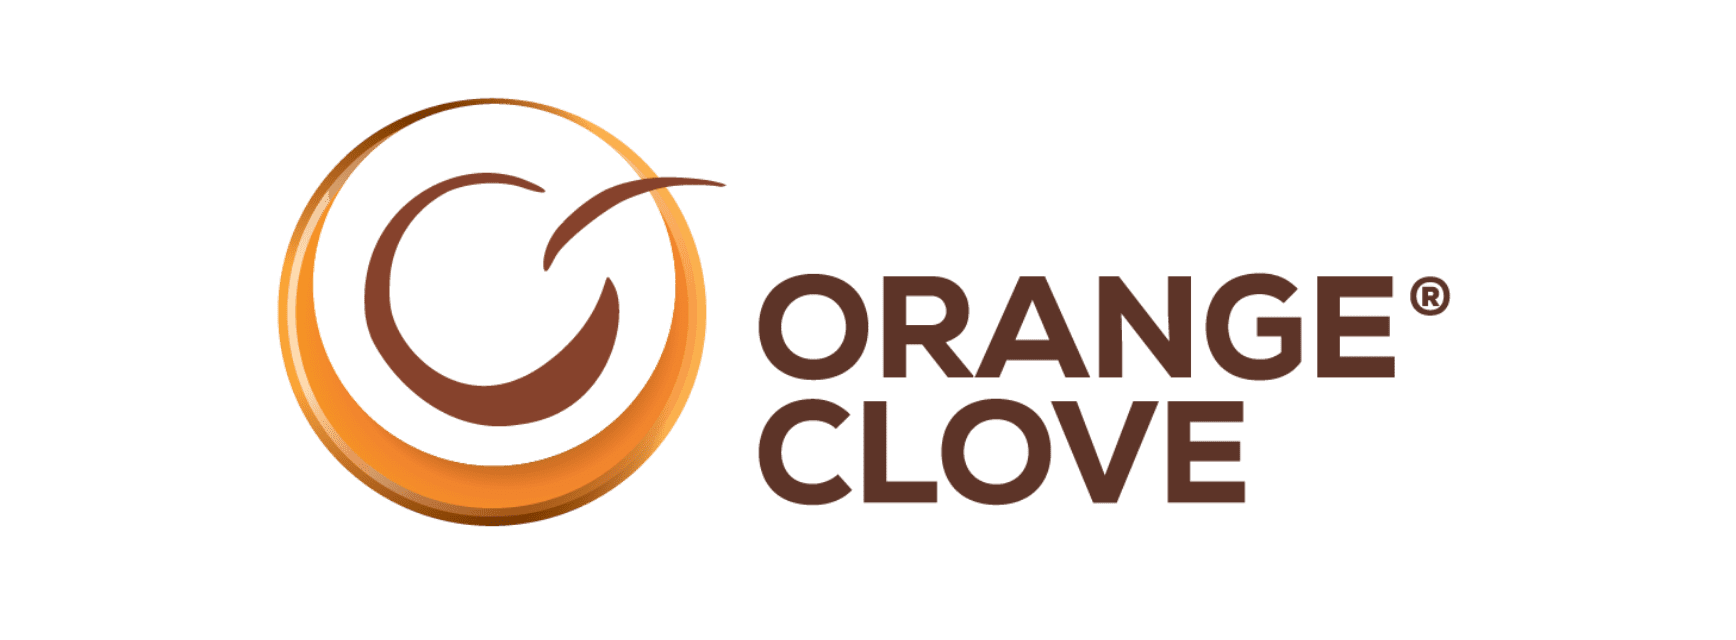 Orange Clove Catering